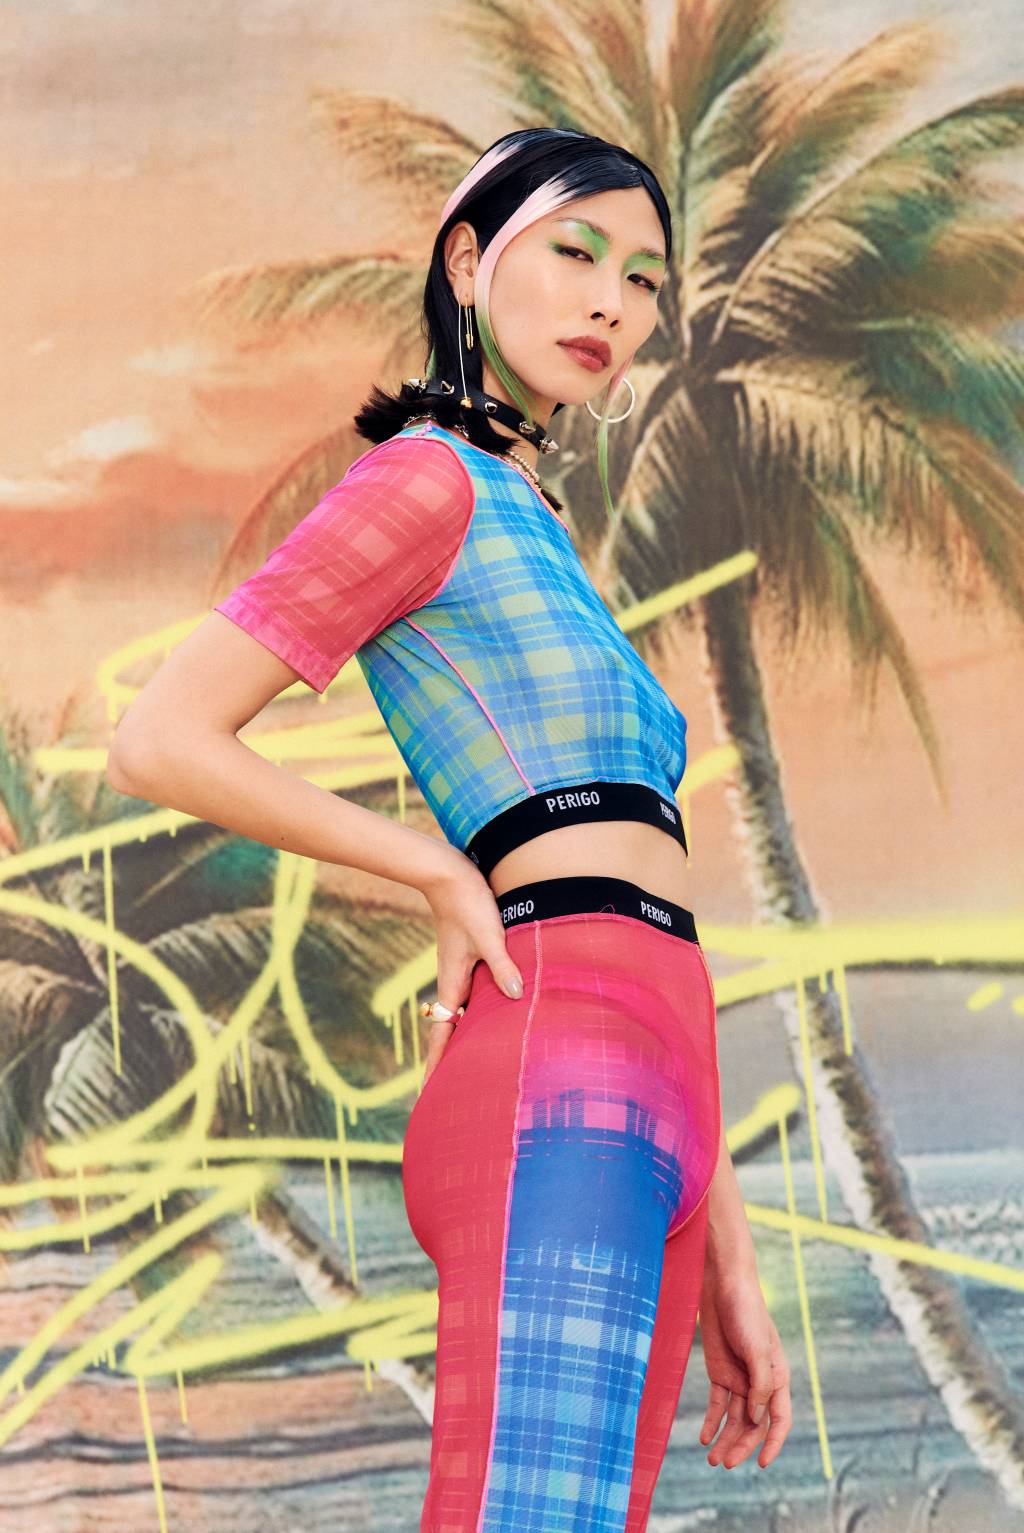 Foto mostra modelo usando blusa e calça coloridas com tecido transparente